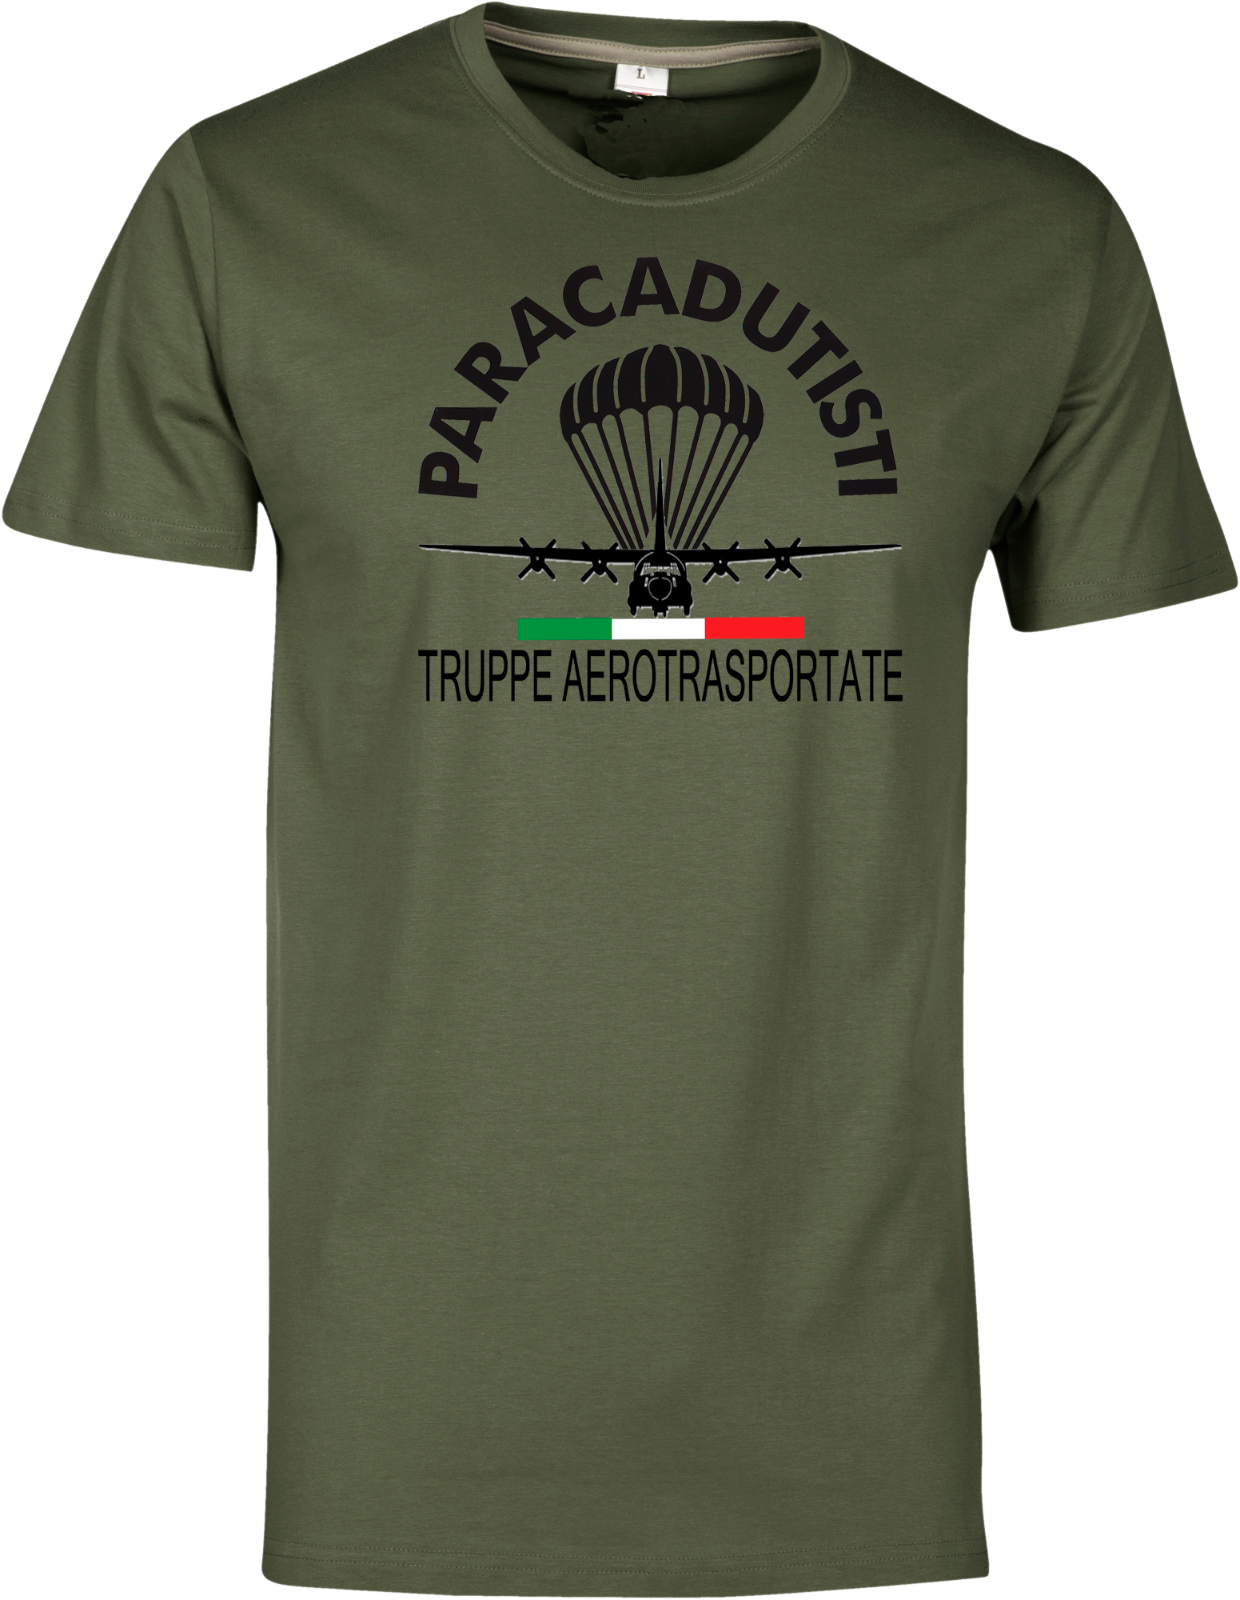 Maglietta T-shirt Paracadutisti C-130 Truppe Aerotrasportate Parà Verde Payper 